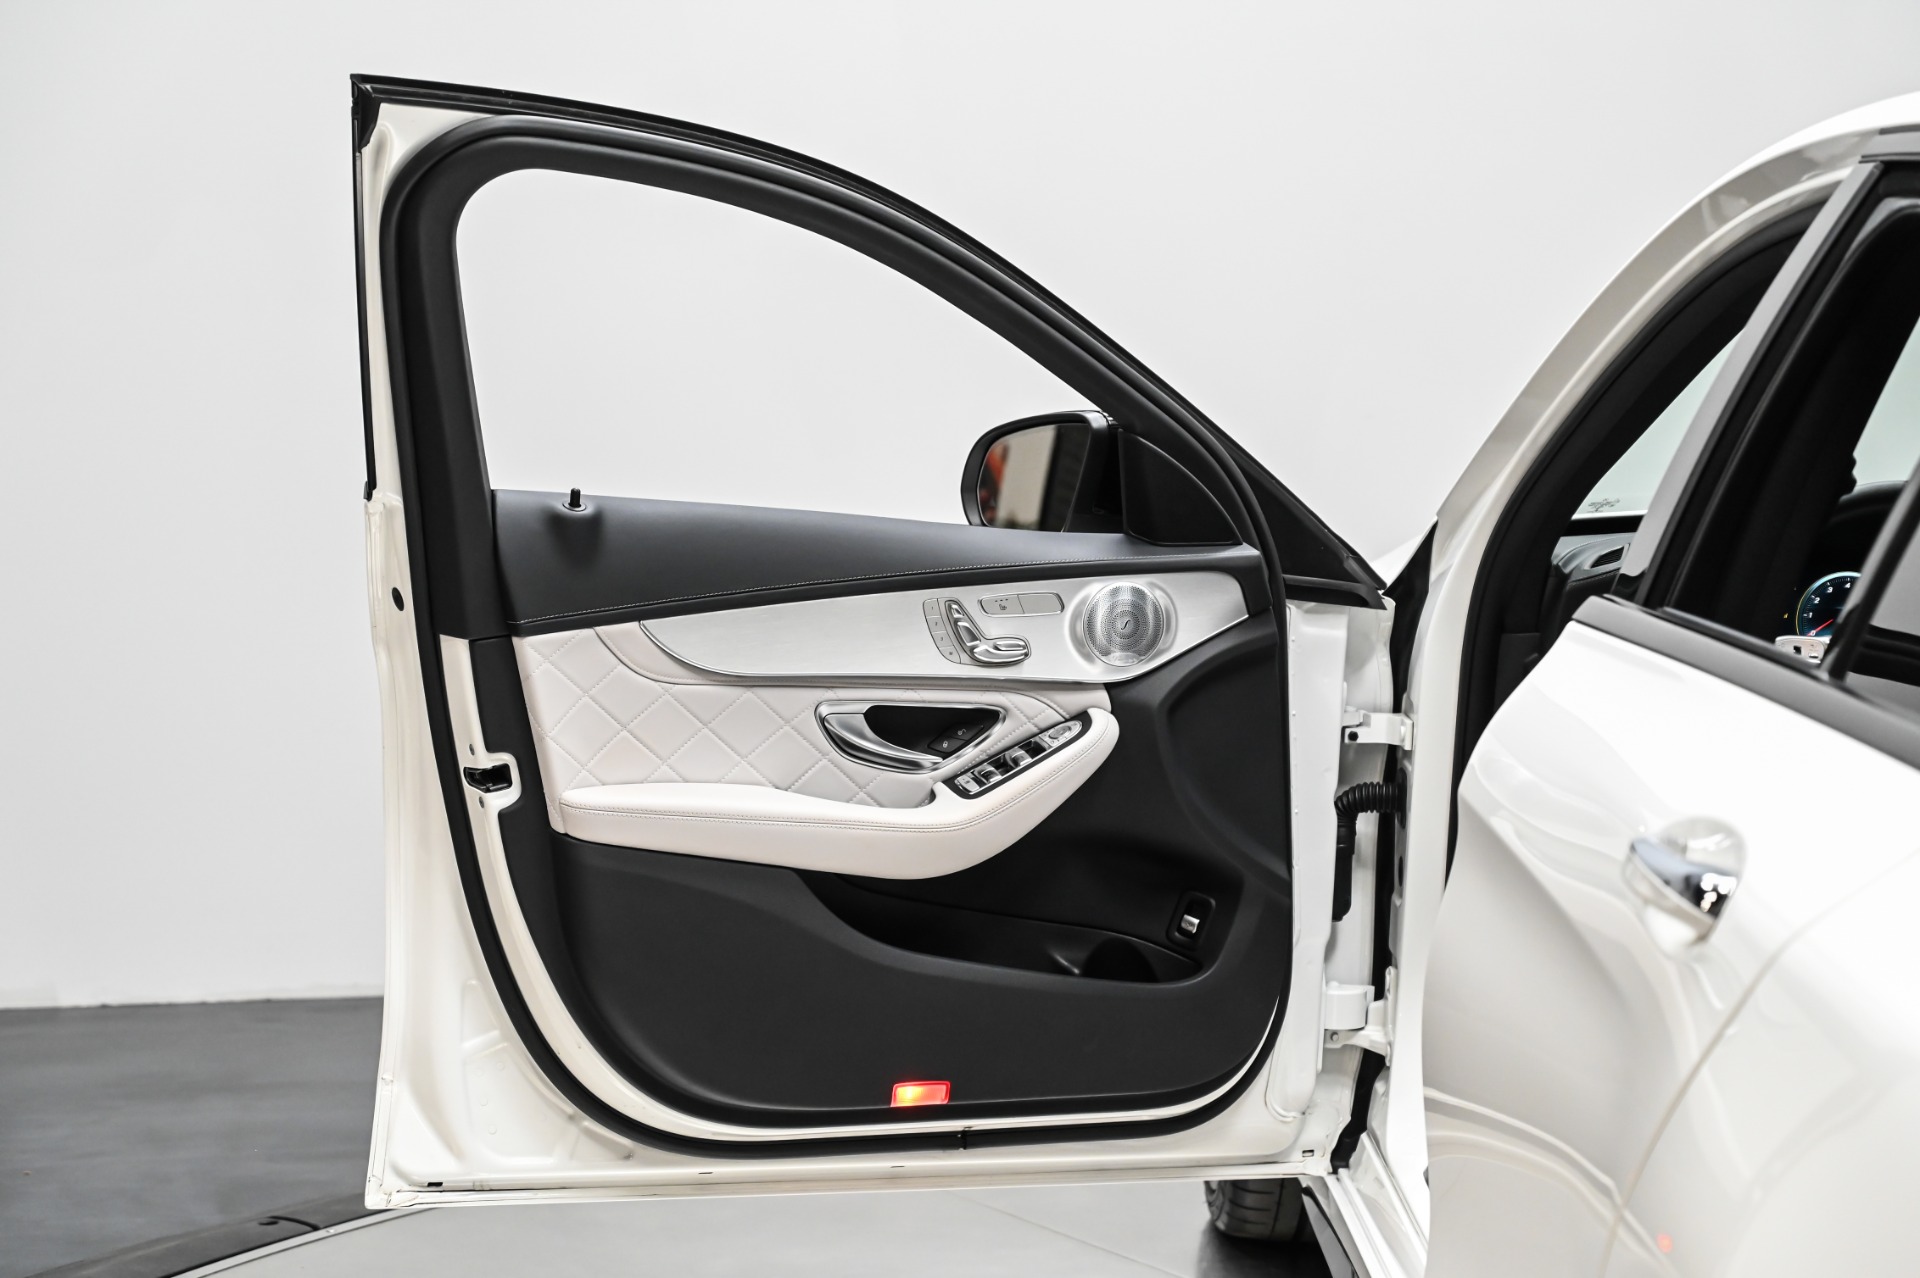 Volkswagen - Door handles with Porsche inscription - Pair Vw Golf